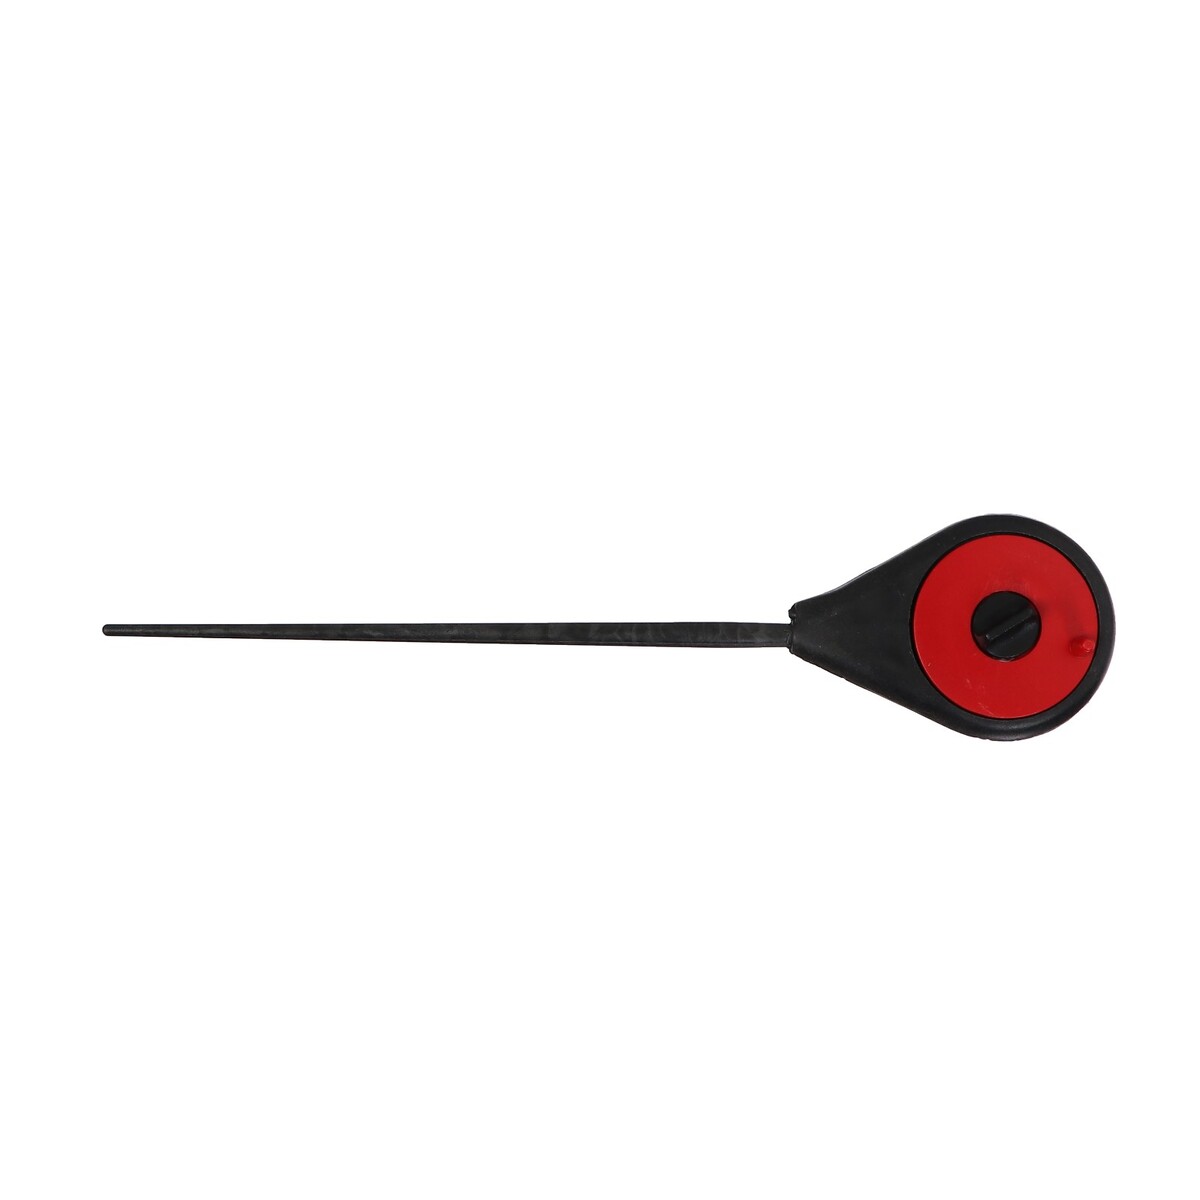 Удочка зимняя балалайка, цвет черный красный, hfb-18 No brand